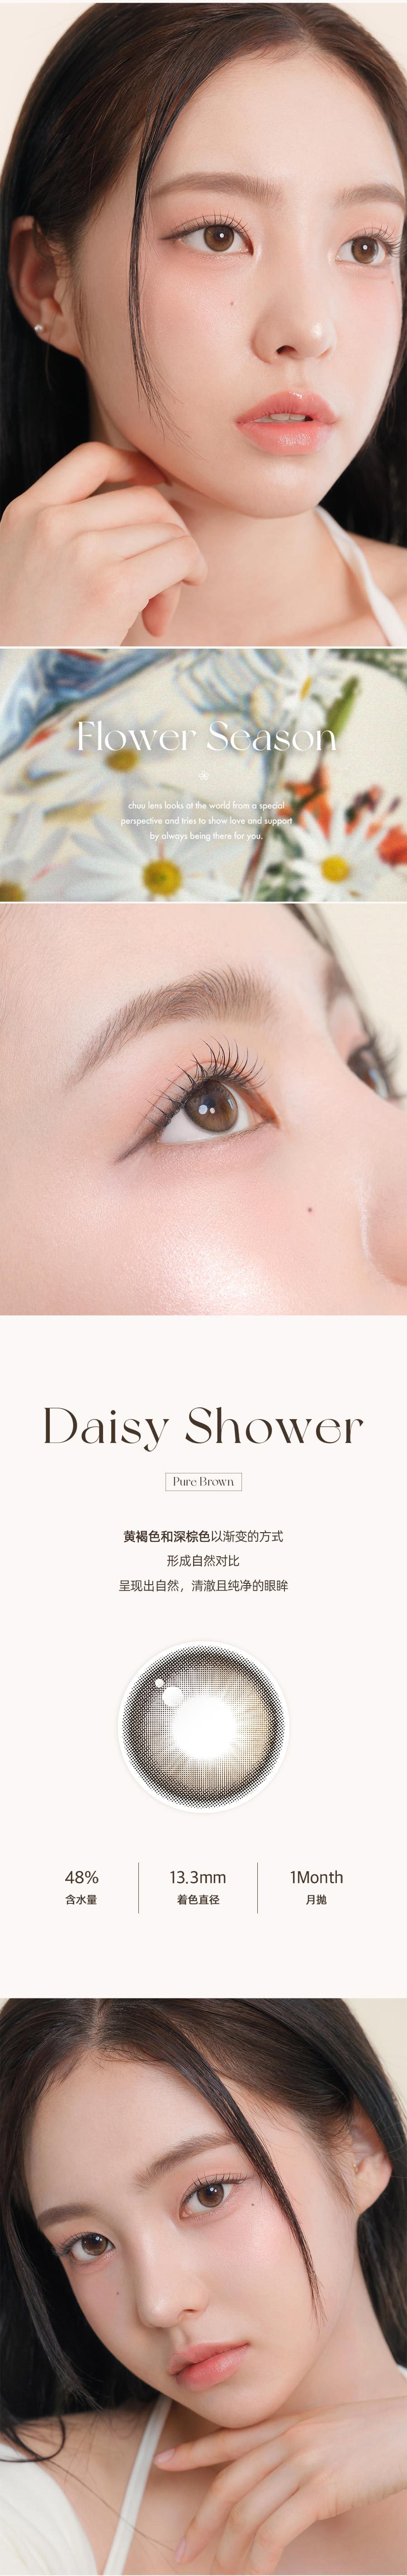 韓國 chuulens 月拋 Daisy Shower Pure Brown13.3mm 2片裝 0度